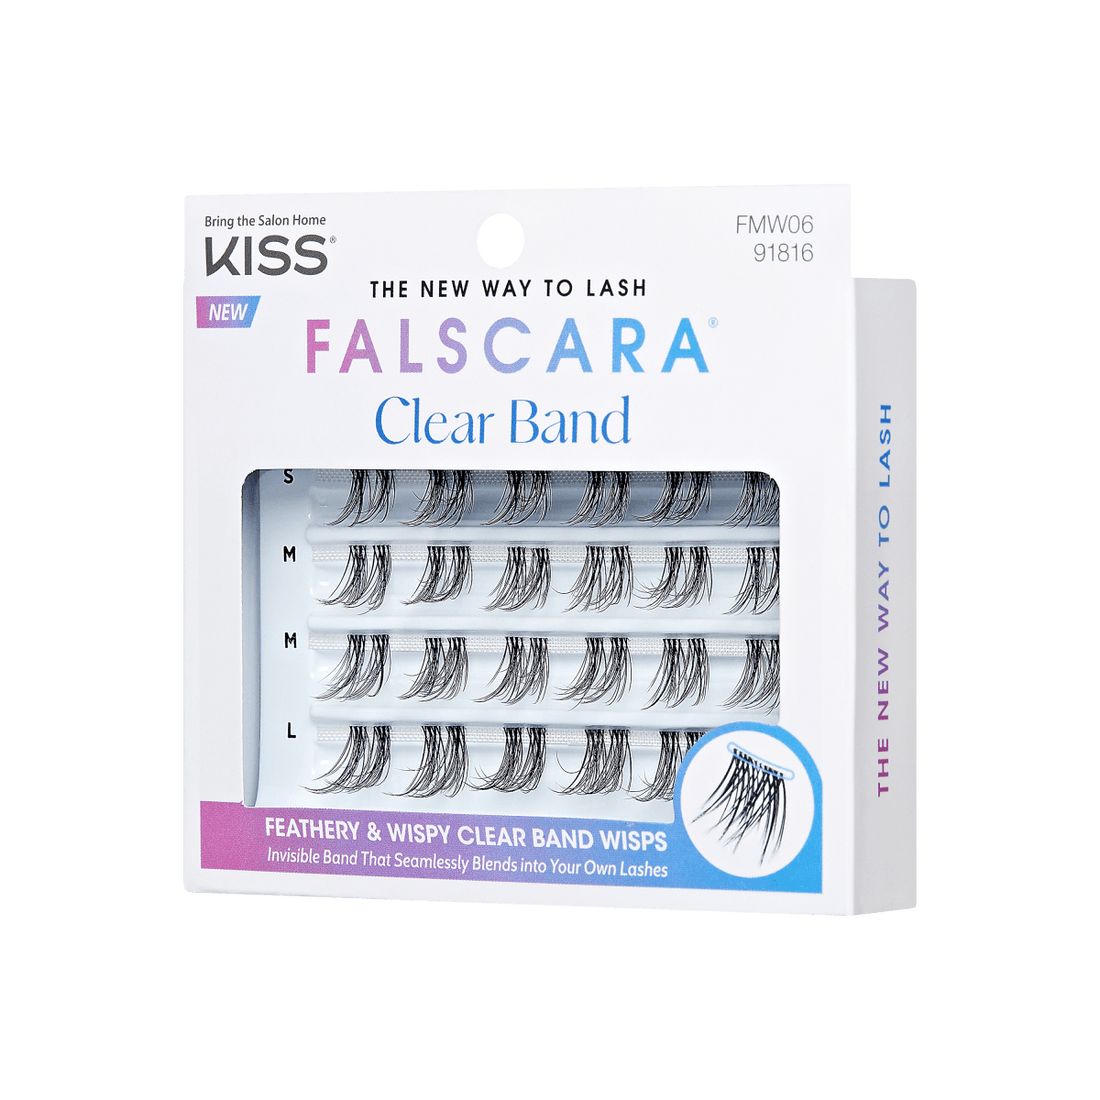 FALSCARA Clear Band Multipack – 24 Wisps